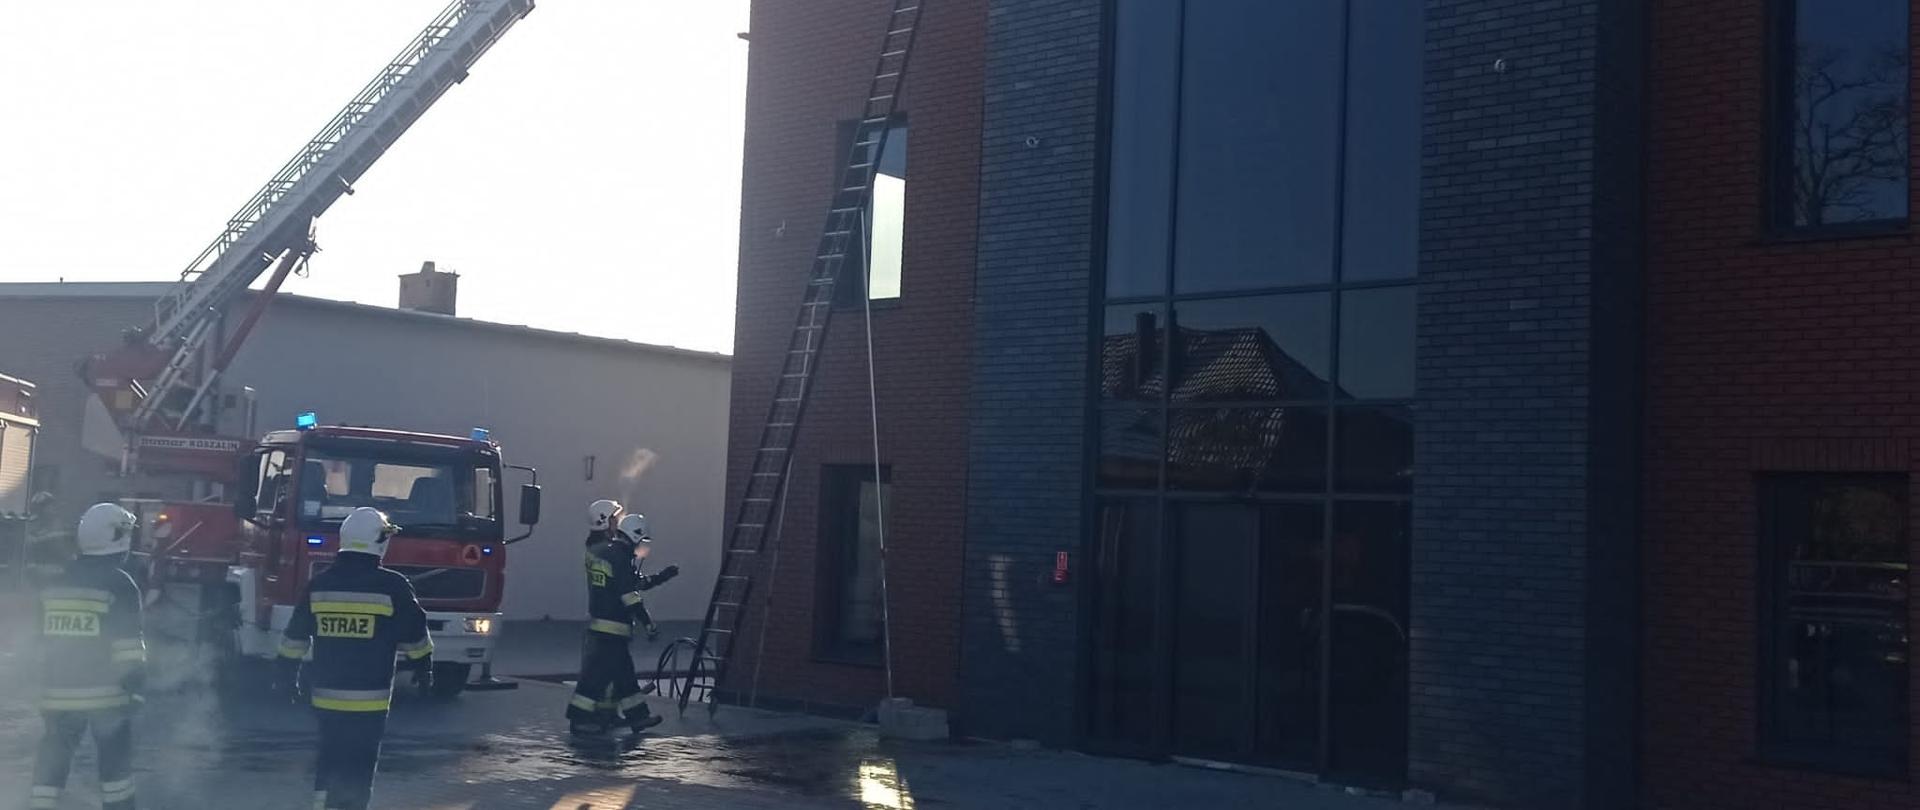 samochód strażacki, budynek biurowy, kostka brukowa strażacy